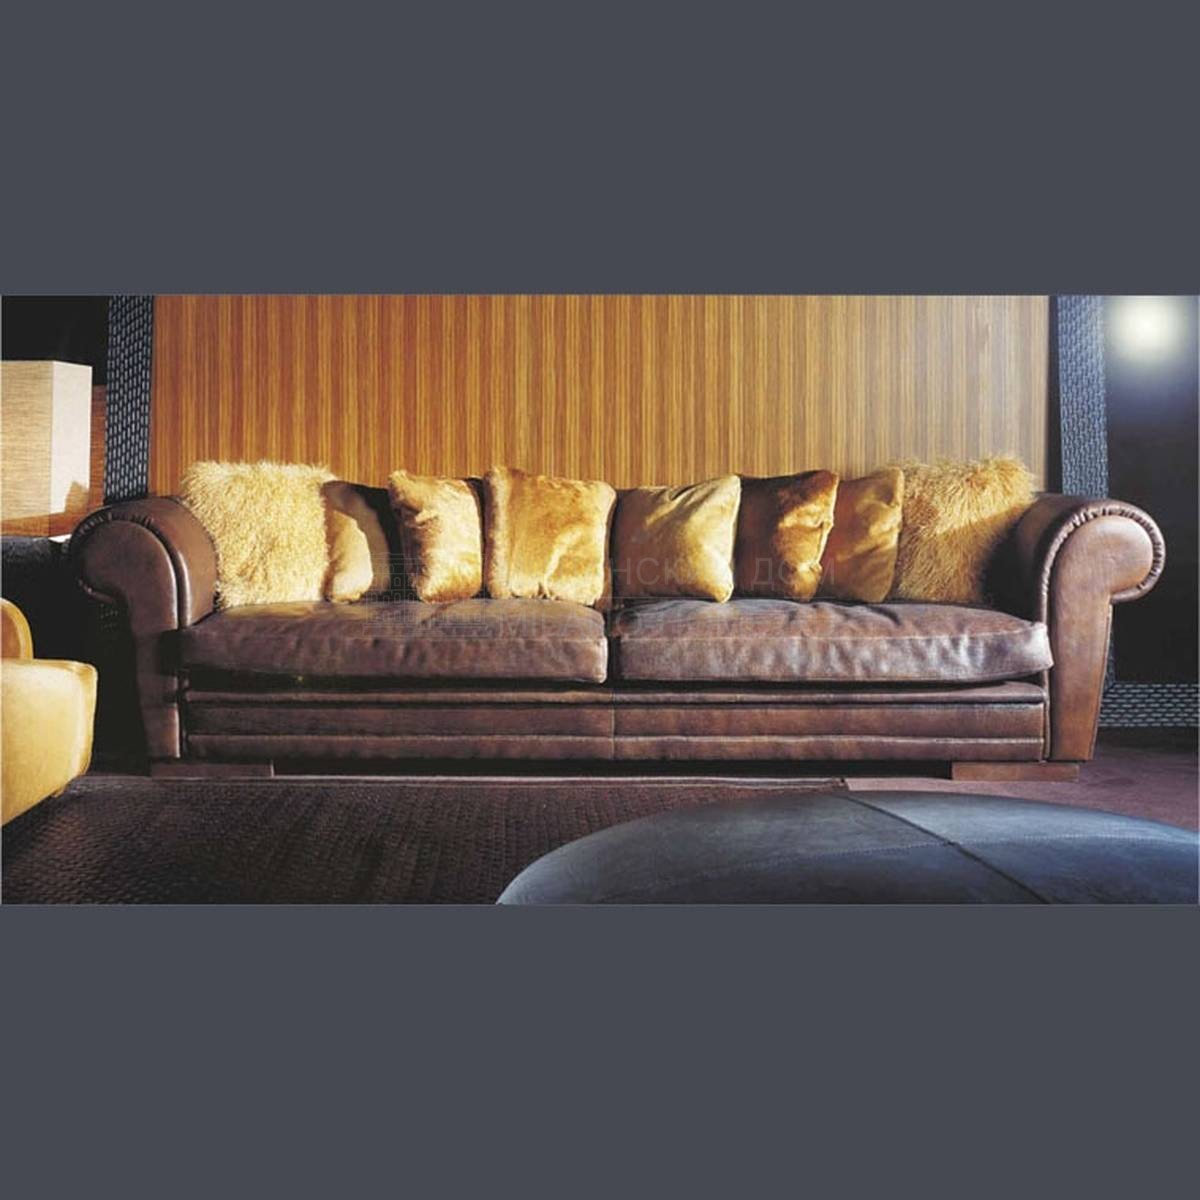 Прямой диван Kamal Sofa из Италии фабрики ULIVI